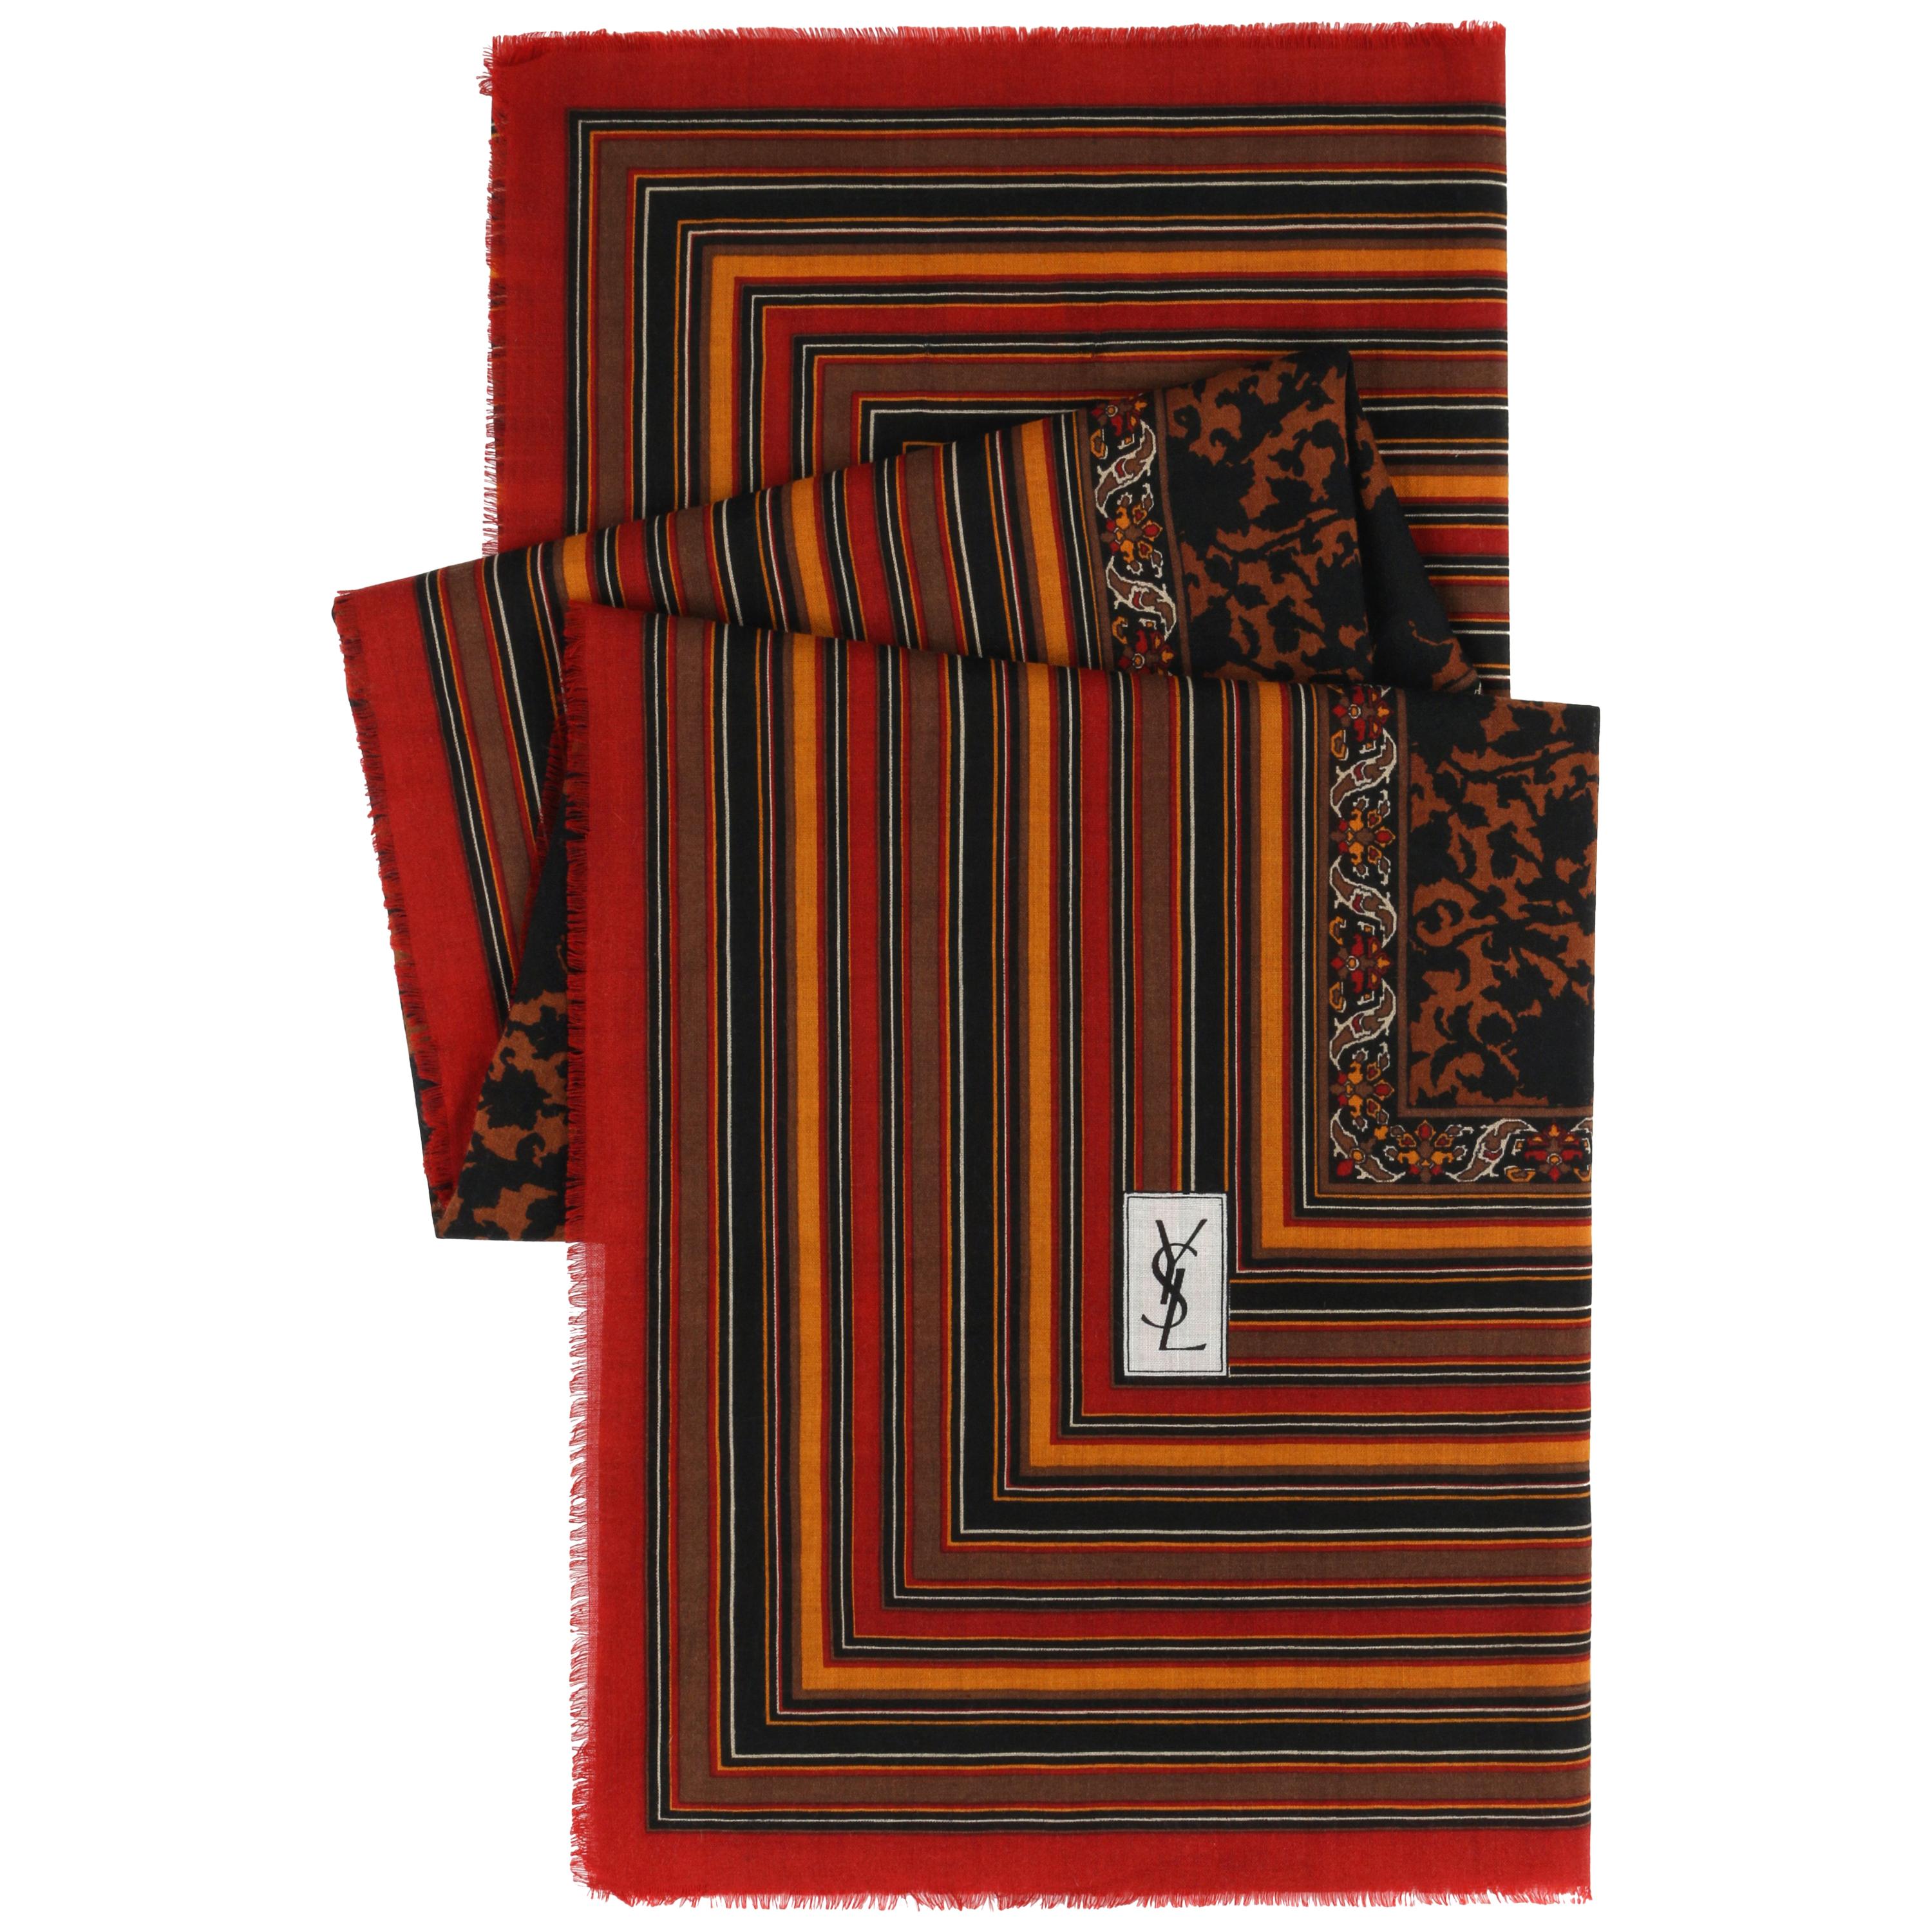 Yves Saint Laurent Foulard - 4 For Sale on 1stDibs | ysl foulard 